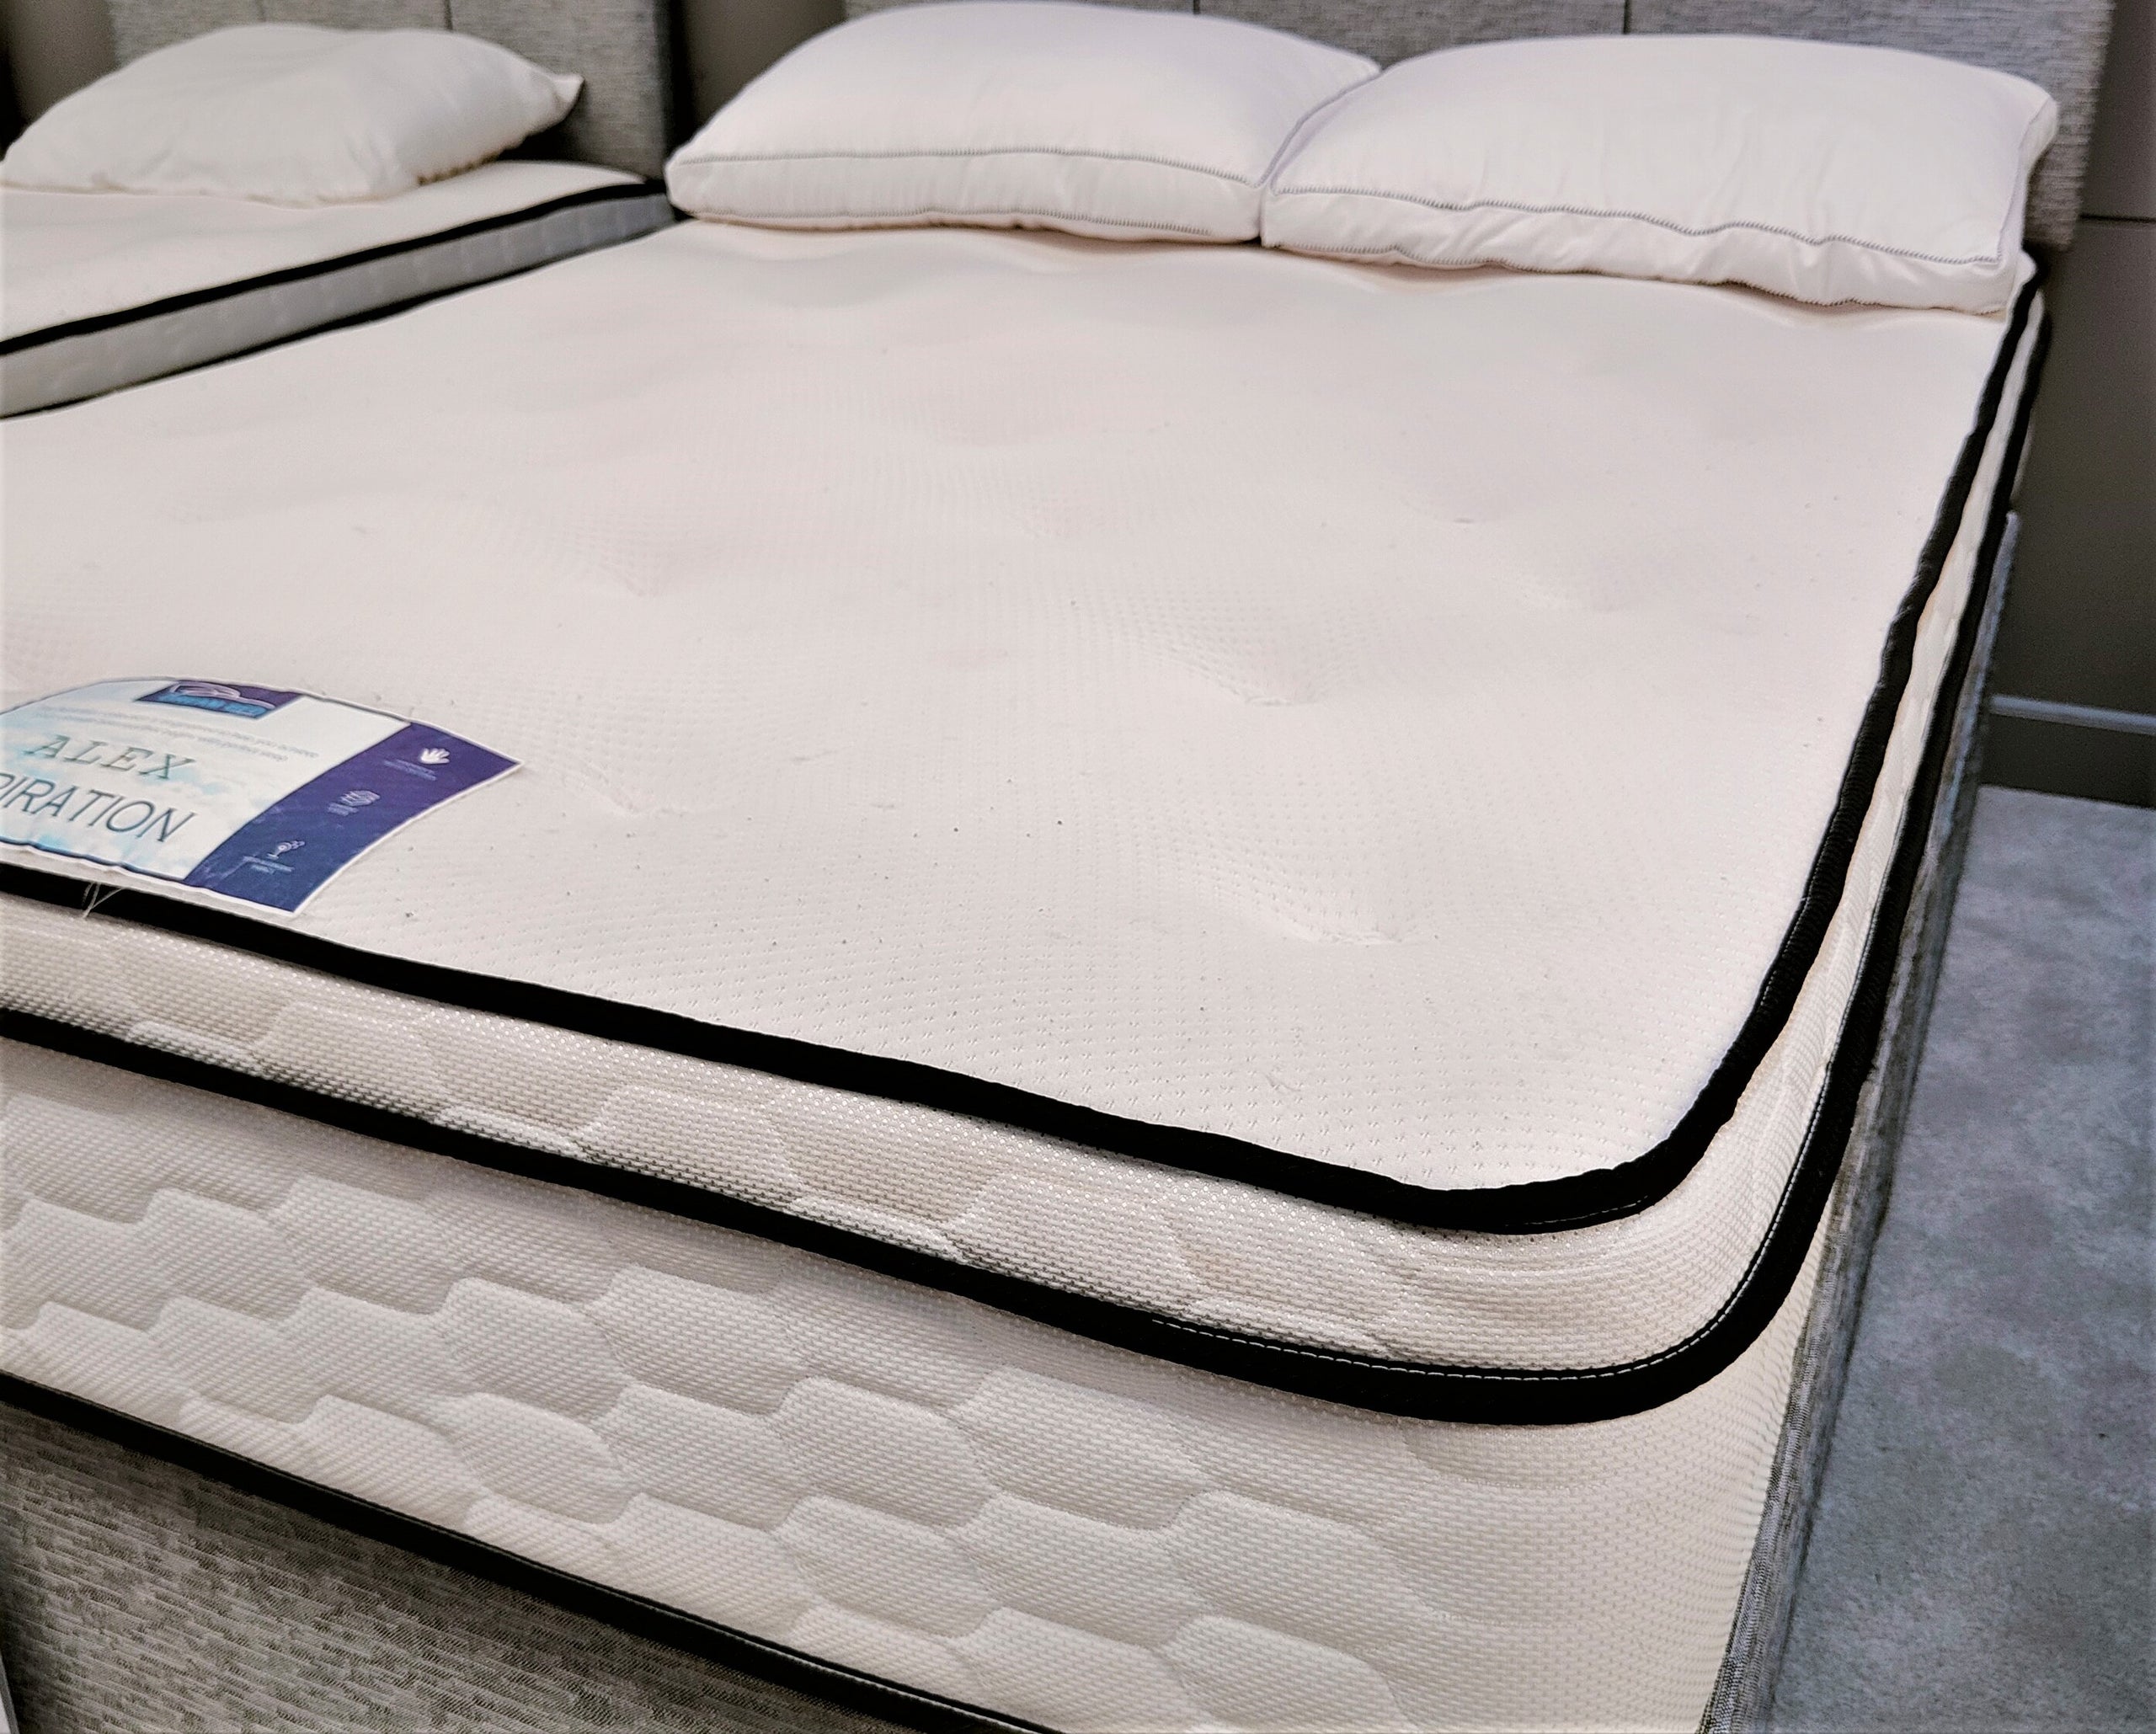 alex weiss mattress firm salary